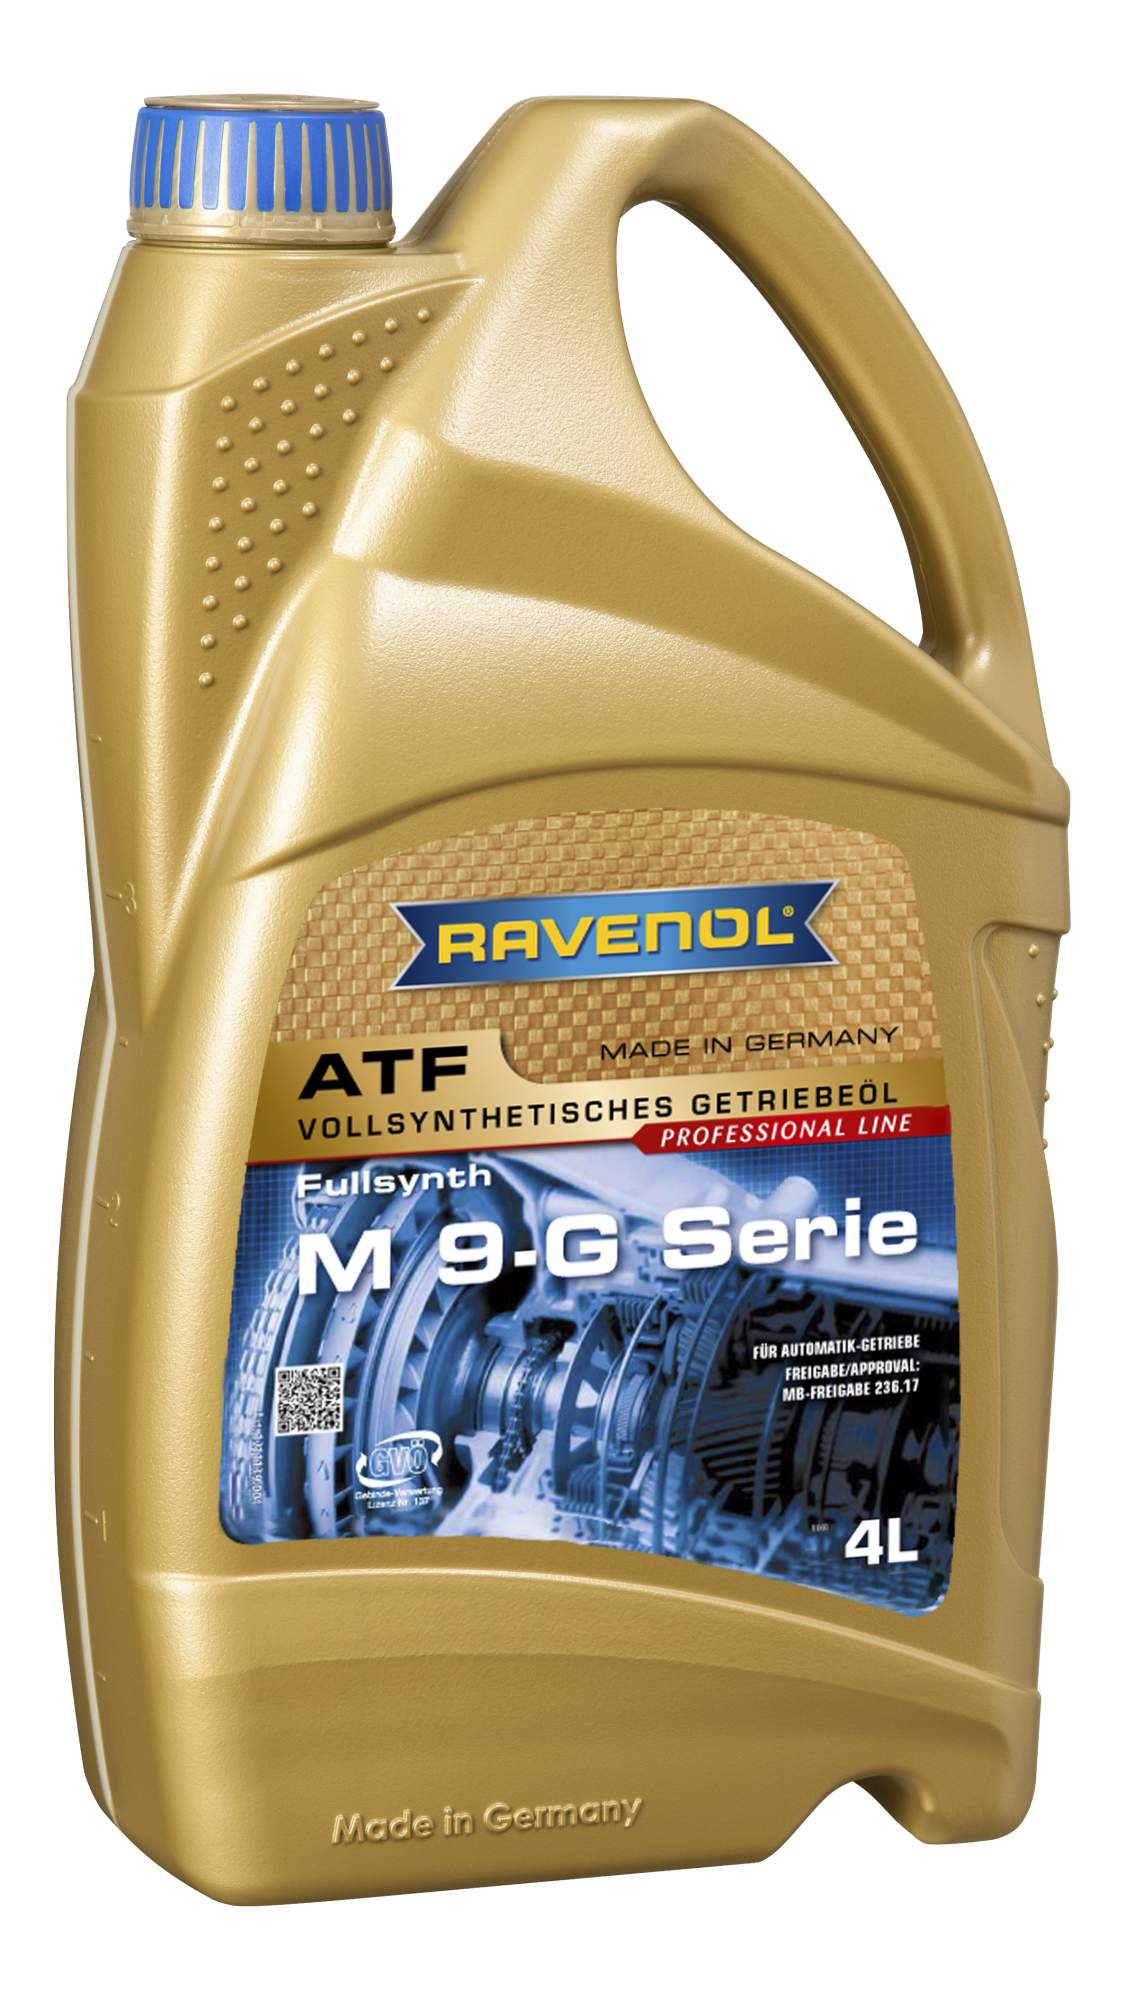 Трансмиссионное масло RAVENOL ATF M 9-G Serie 4л MB 236.17